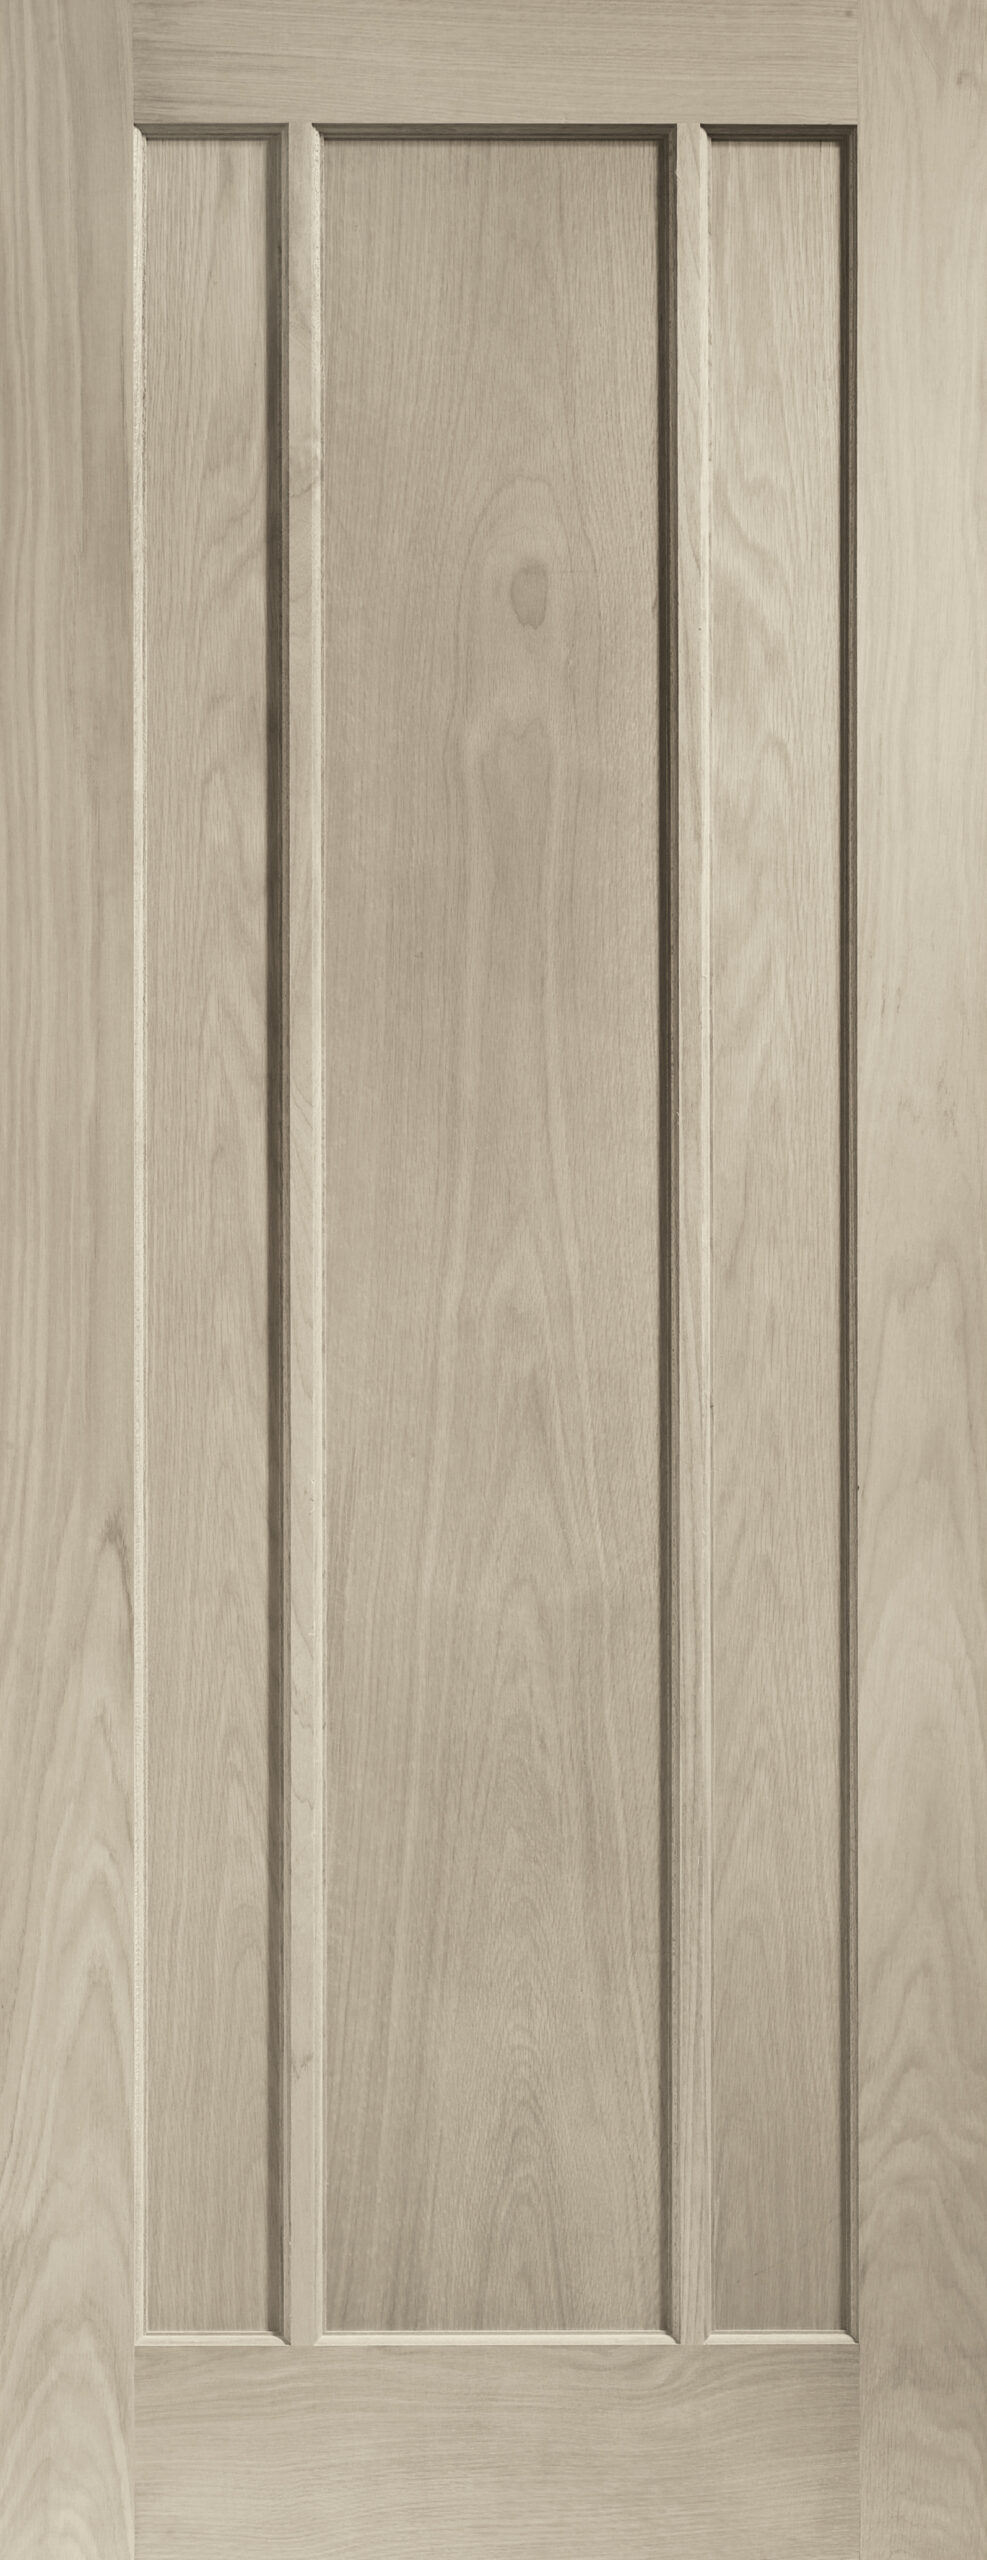 Worcester Internal Oak Door – Crema, 2040 x 626 x 40 mm